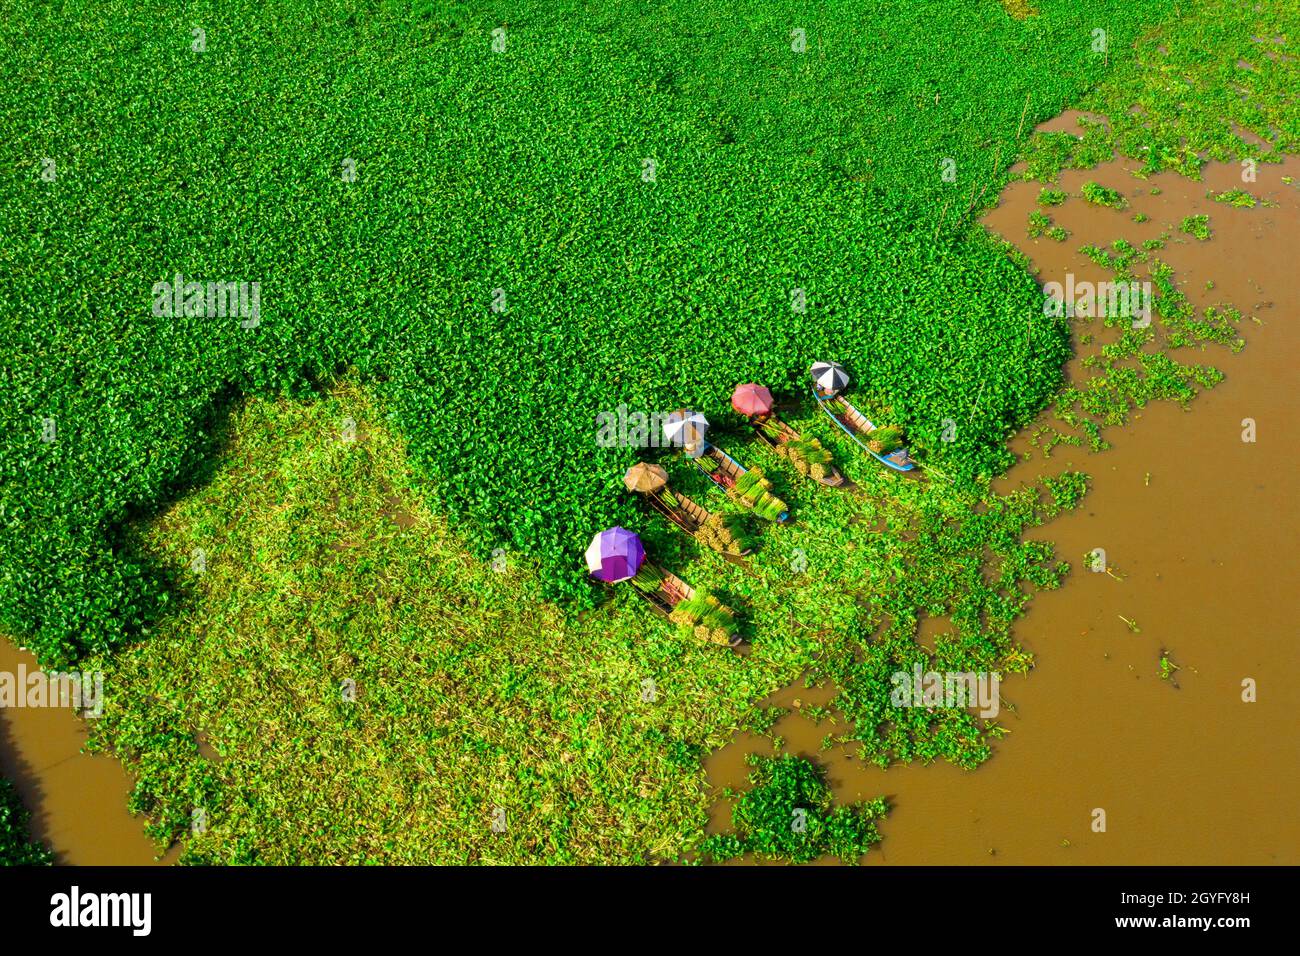 Area specializzata nella coltivazione di giacinto d'acqua per fare artigianato a Hau Giang, Foto Stock